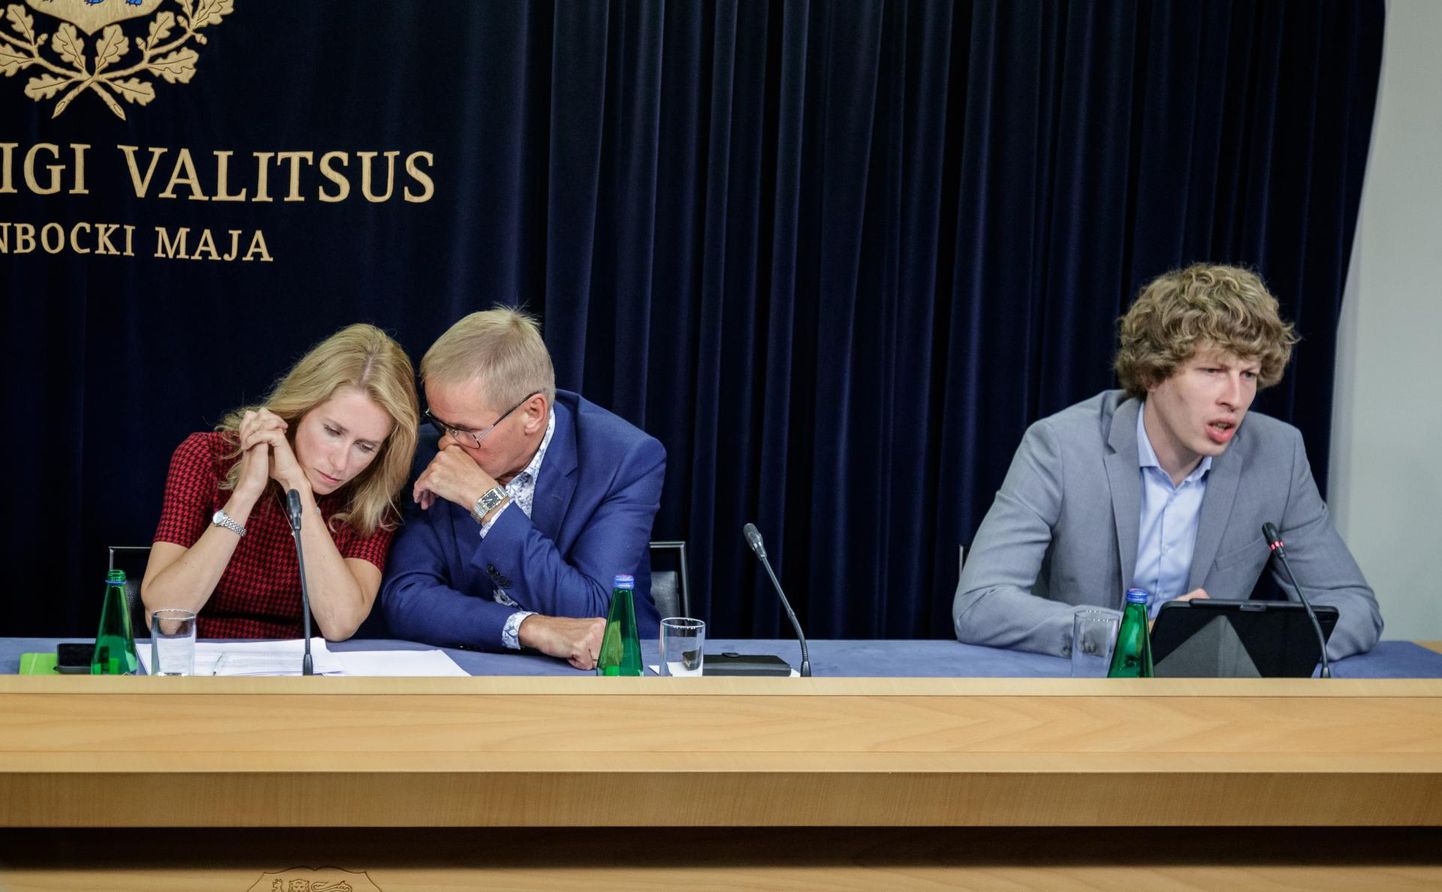 Tallinn Vabariigi valitsuse pressikonverents Stenbocki majas. Vasakult peaminister Kaja Kallas, riigihalduse minister Jaak Aab, tervise- ja tööminister Tanel Kiik. Foto on illustratiivne